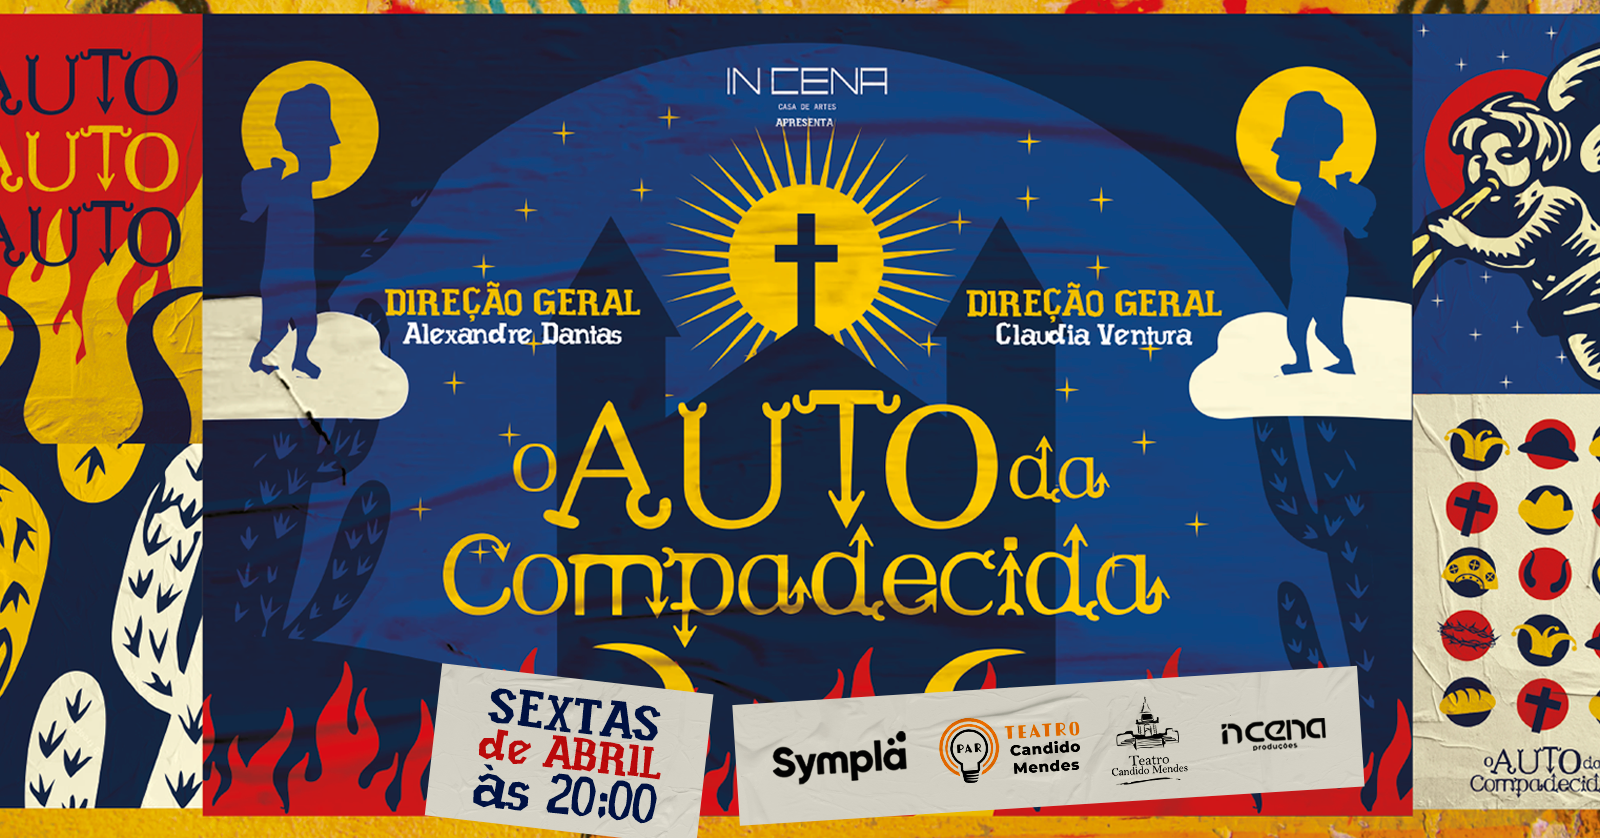 Sucesso da In Cena Casa de Artes, o espetáculo “O Auto da Compadecida”  volta ao cartaz, dia 5 de abril, no Teatro Candido Mendes, em Ipanema –  Dica de Teatro